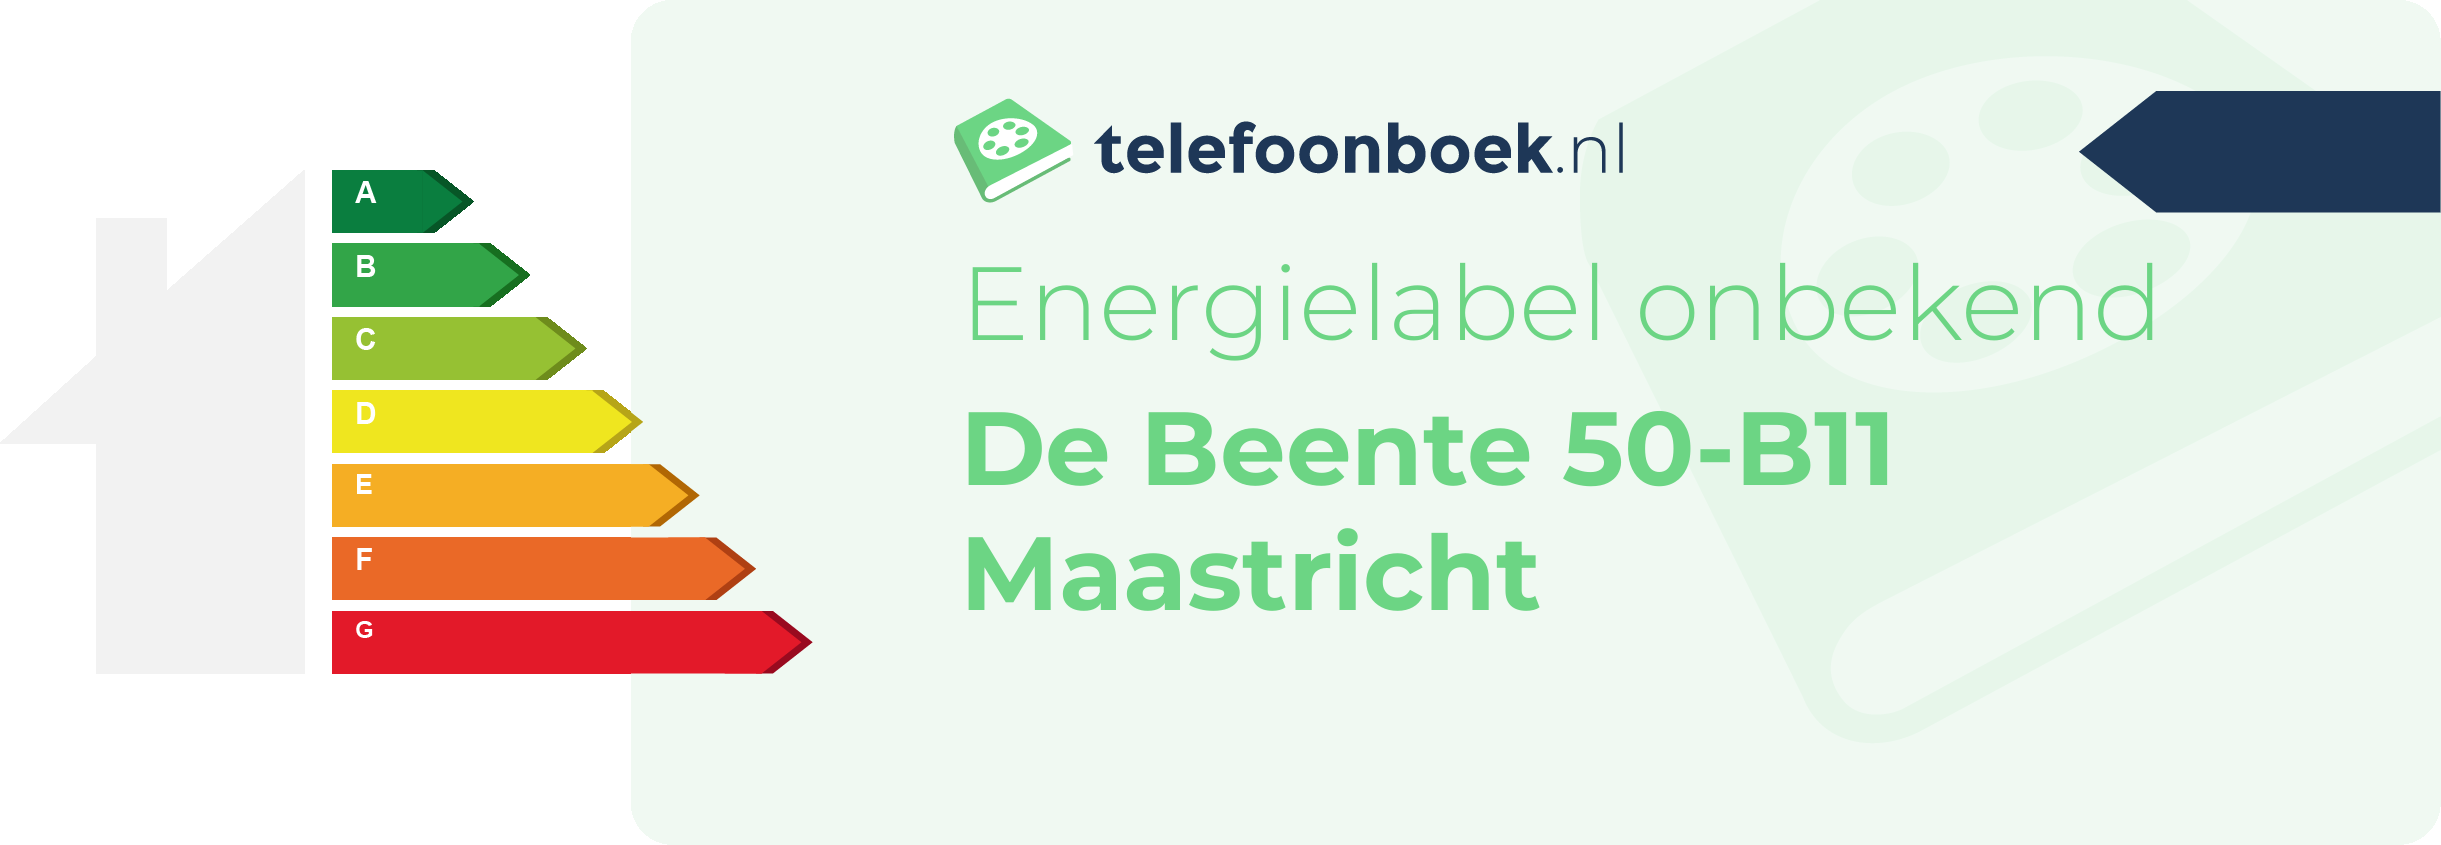 Energielabel De Beente 50-B11 Maastricht